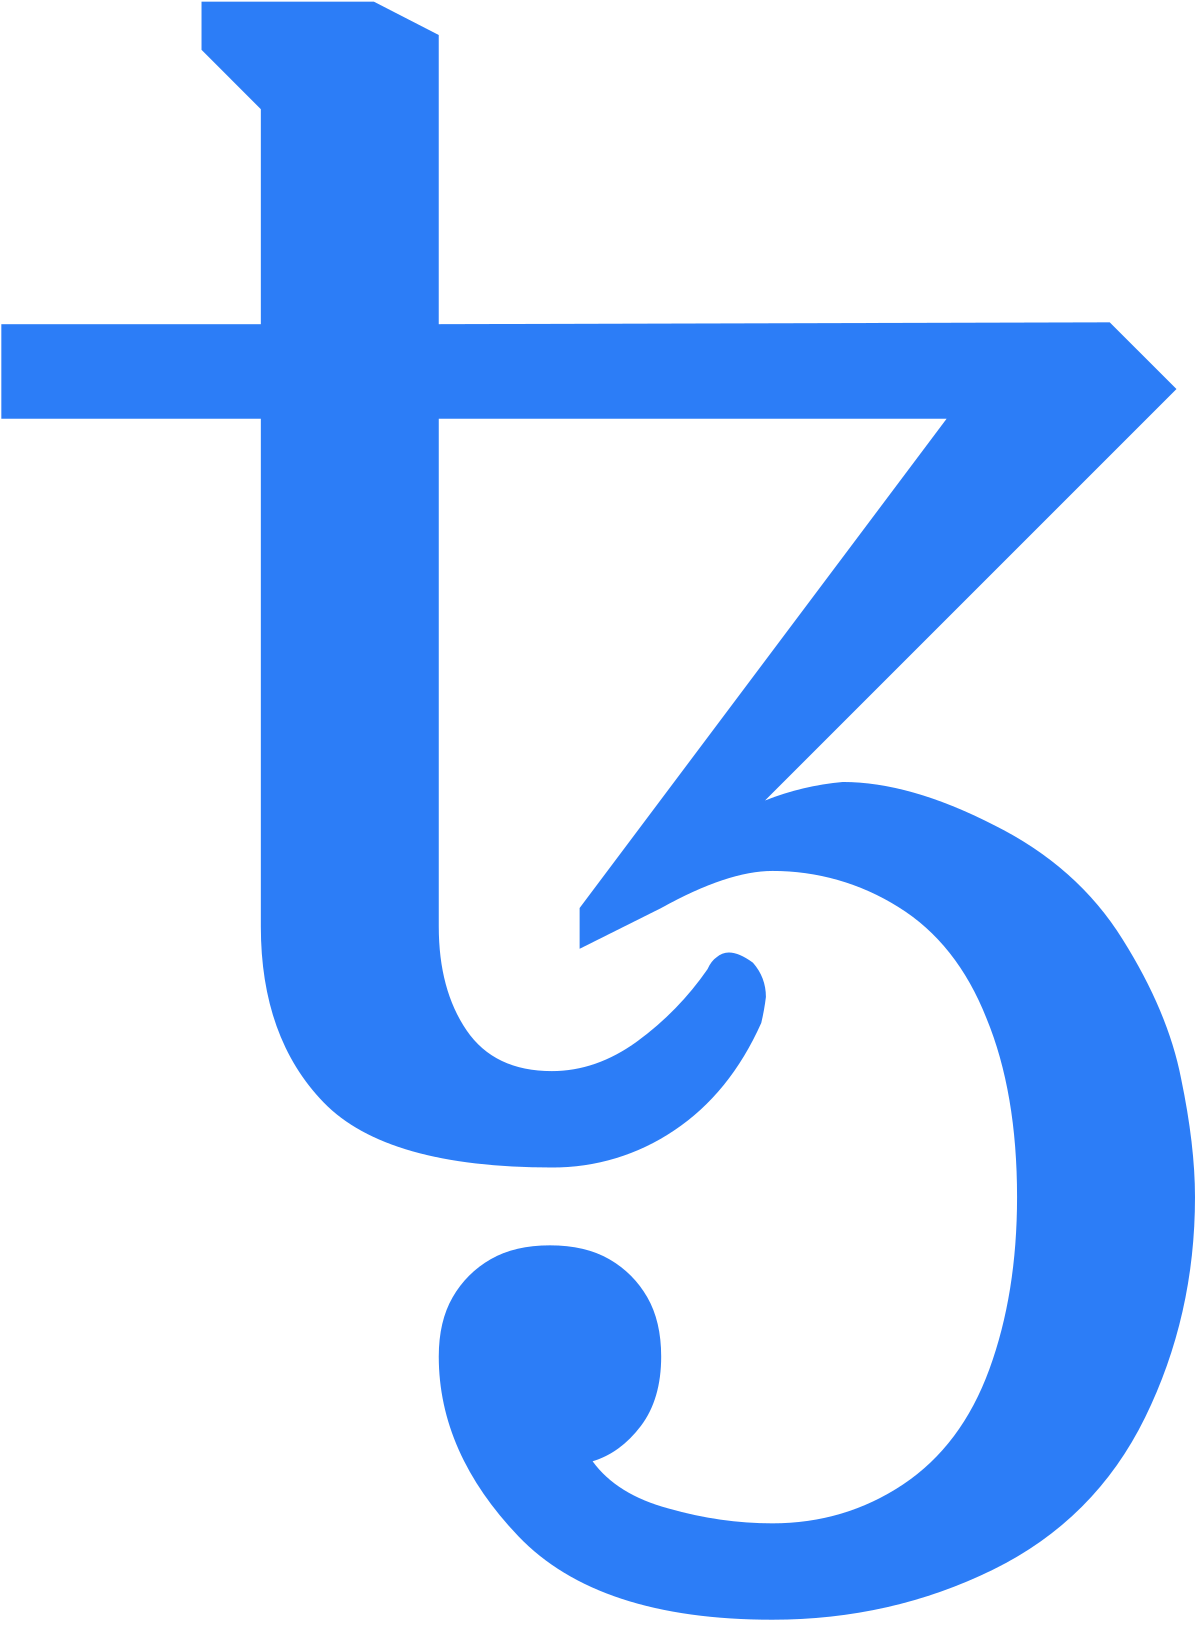 Tezos - Wikipedia